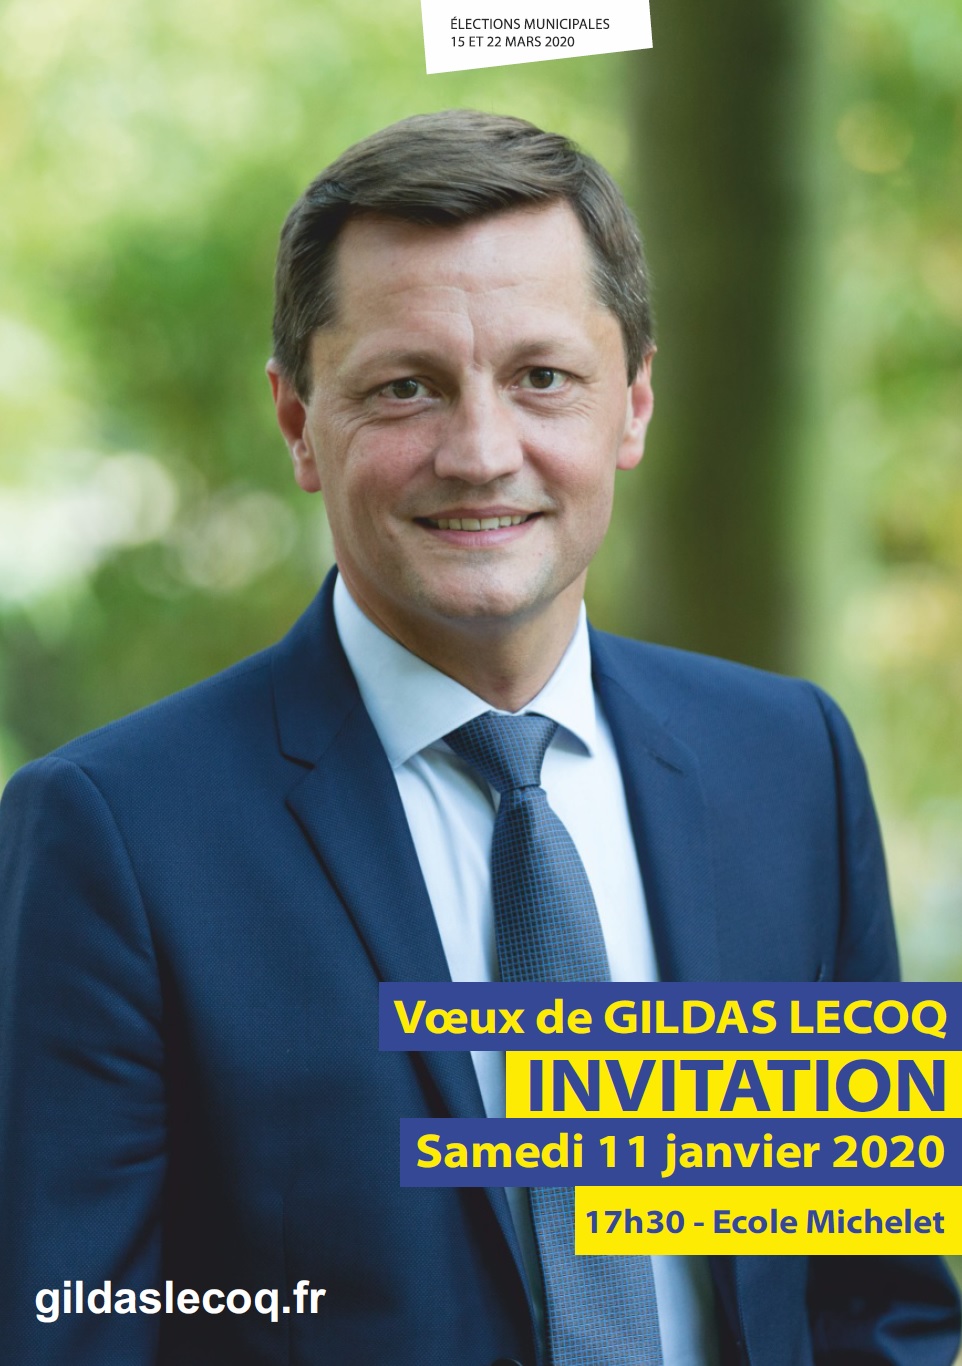 ⏰ INVITATION : Voeux de Gildas Lecoq le 11 Janvier 2020 Invita10